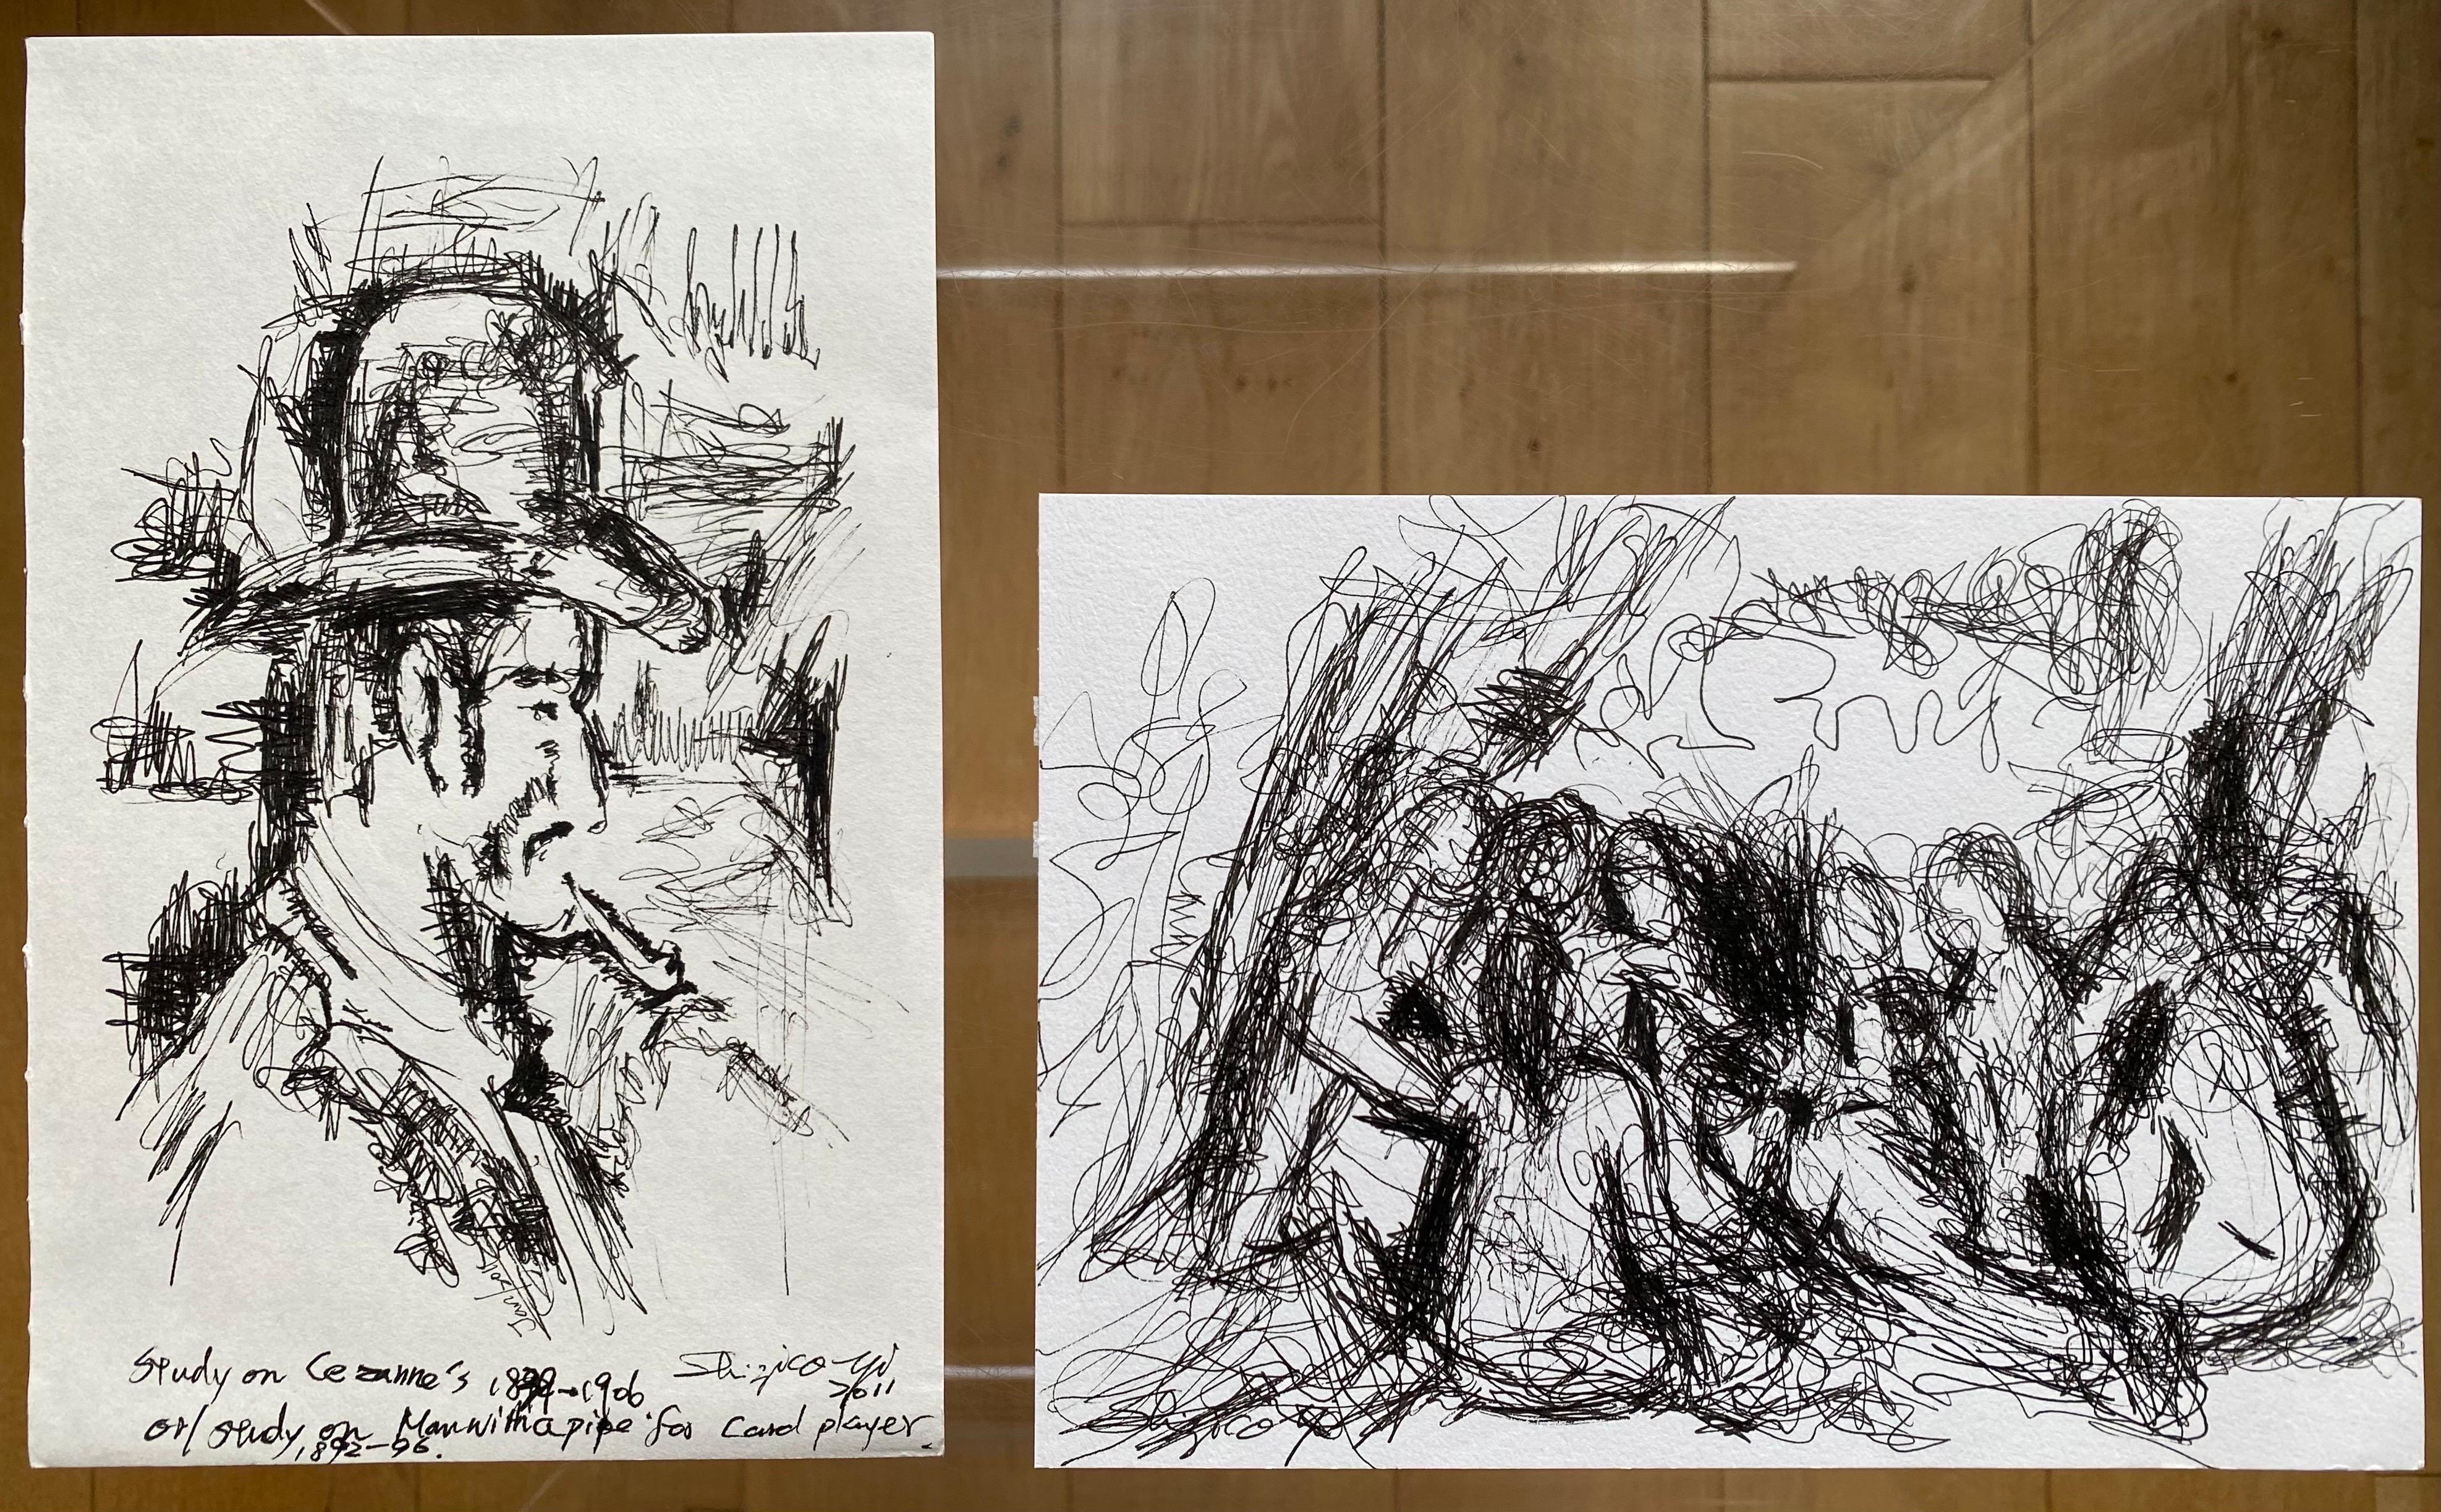 Zu dieser Reihe von Zeichnungen gehören zwei Studien von Cezannes Gemälden in der National Gallery und der Courtauld Gallery in London, wo Shizico Yi ihr Handwerk im Zeichnen von alten Meistern in Museen erlernte, ein Projekt, das sie 2005